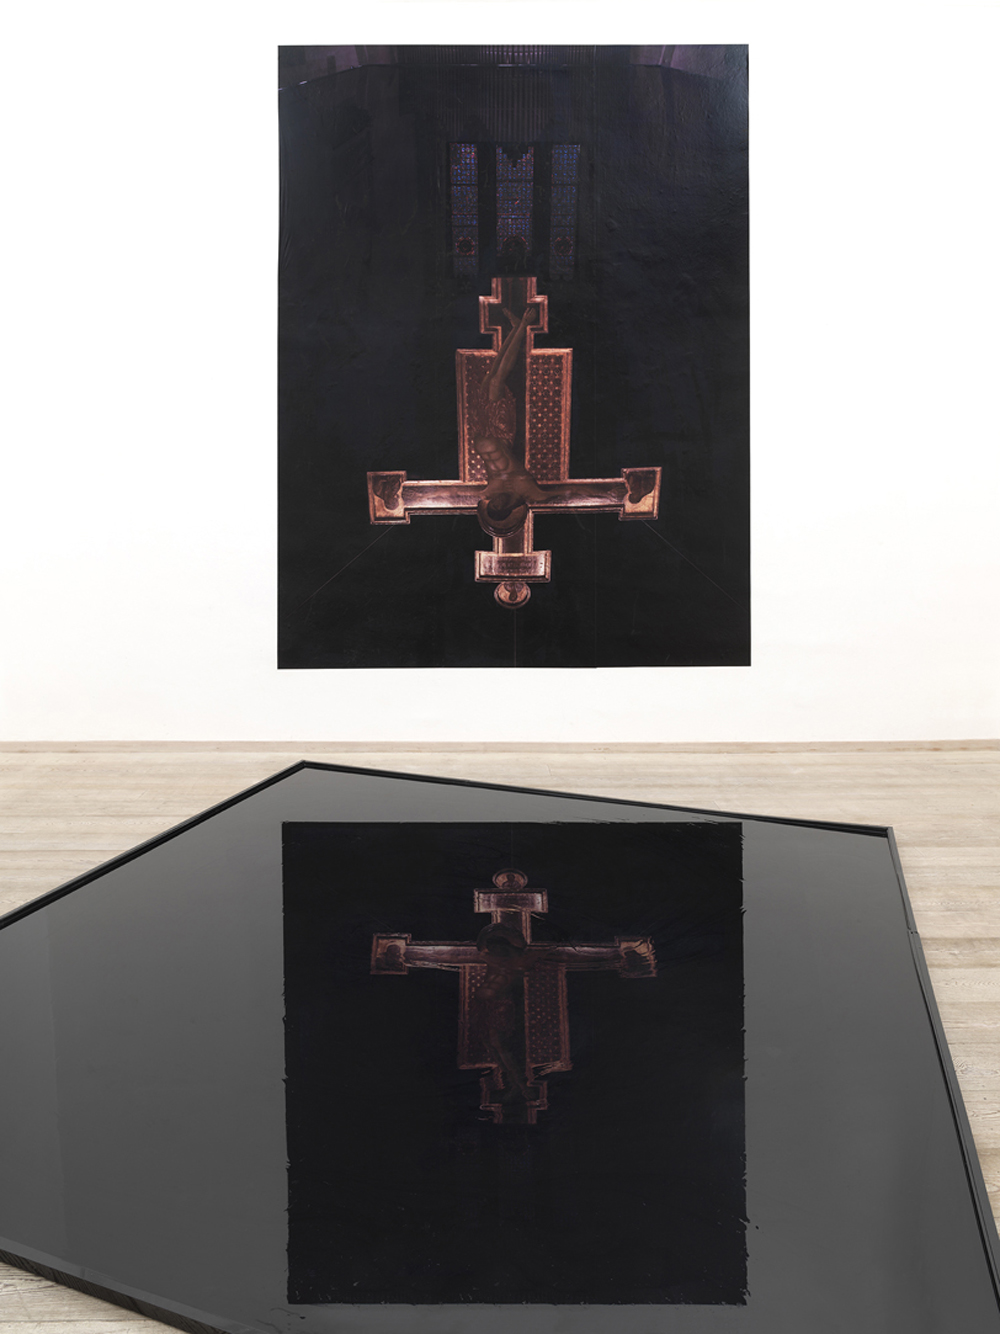 sala II - Installazione d’olio 
Cimabue 2, Chiesa di San Domenico, Arezzo, 2014, stampa fotografica e vasca d’olio, dimensione ambiente